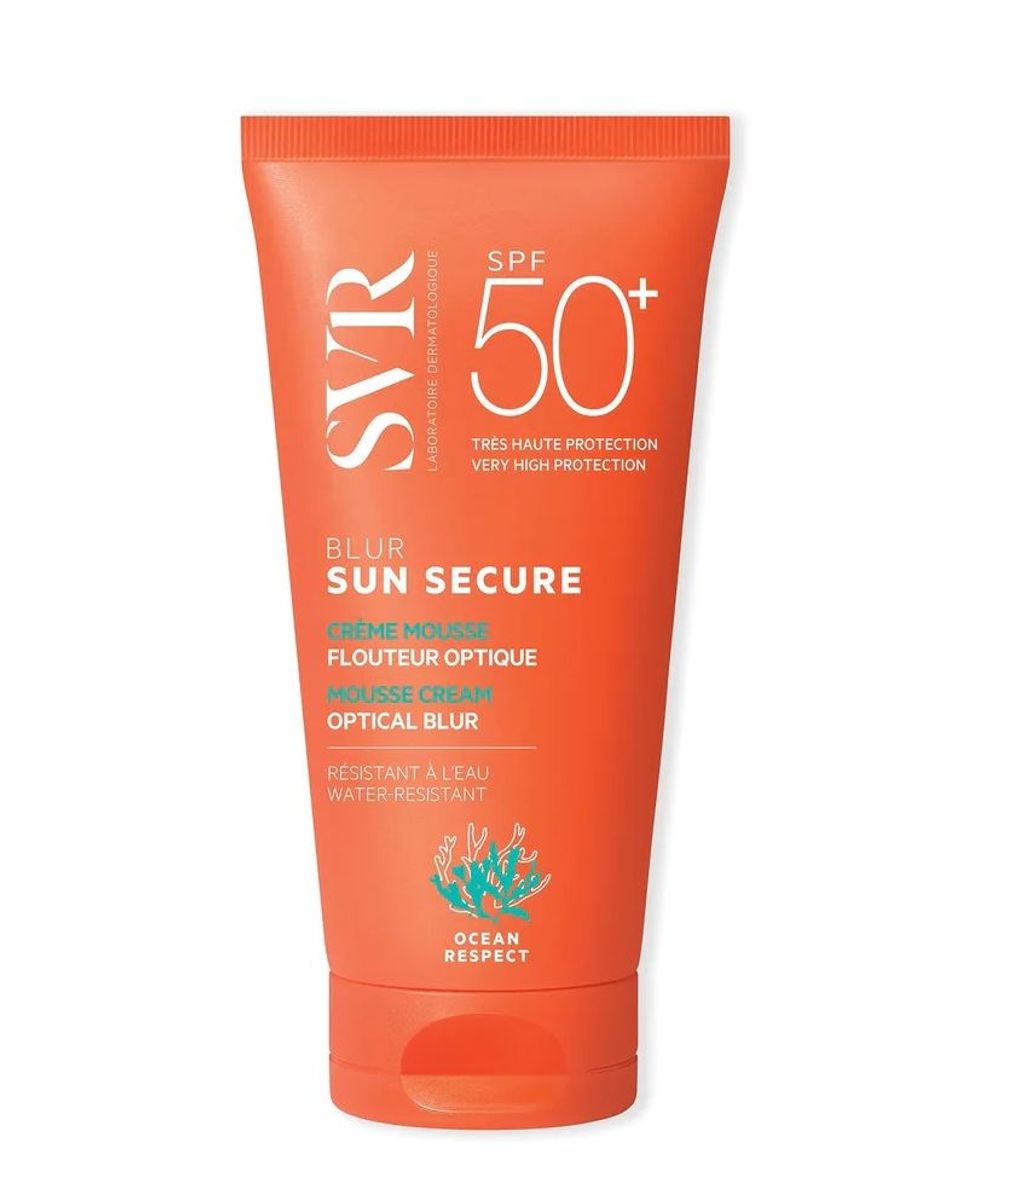 Sun Secure Blur SPF50+ de SVR